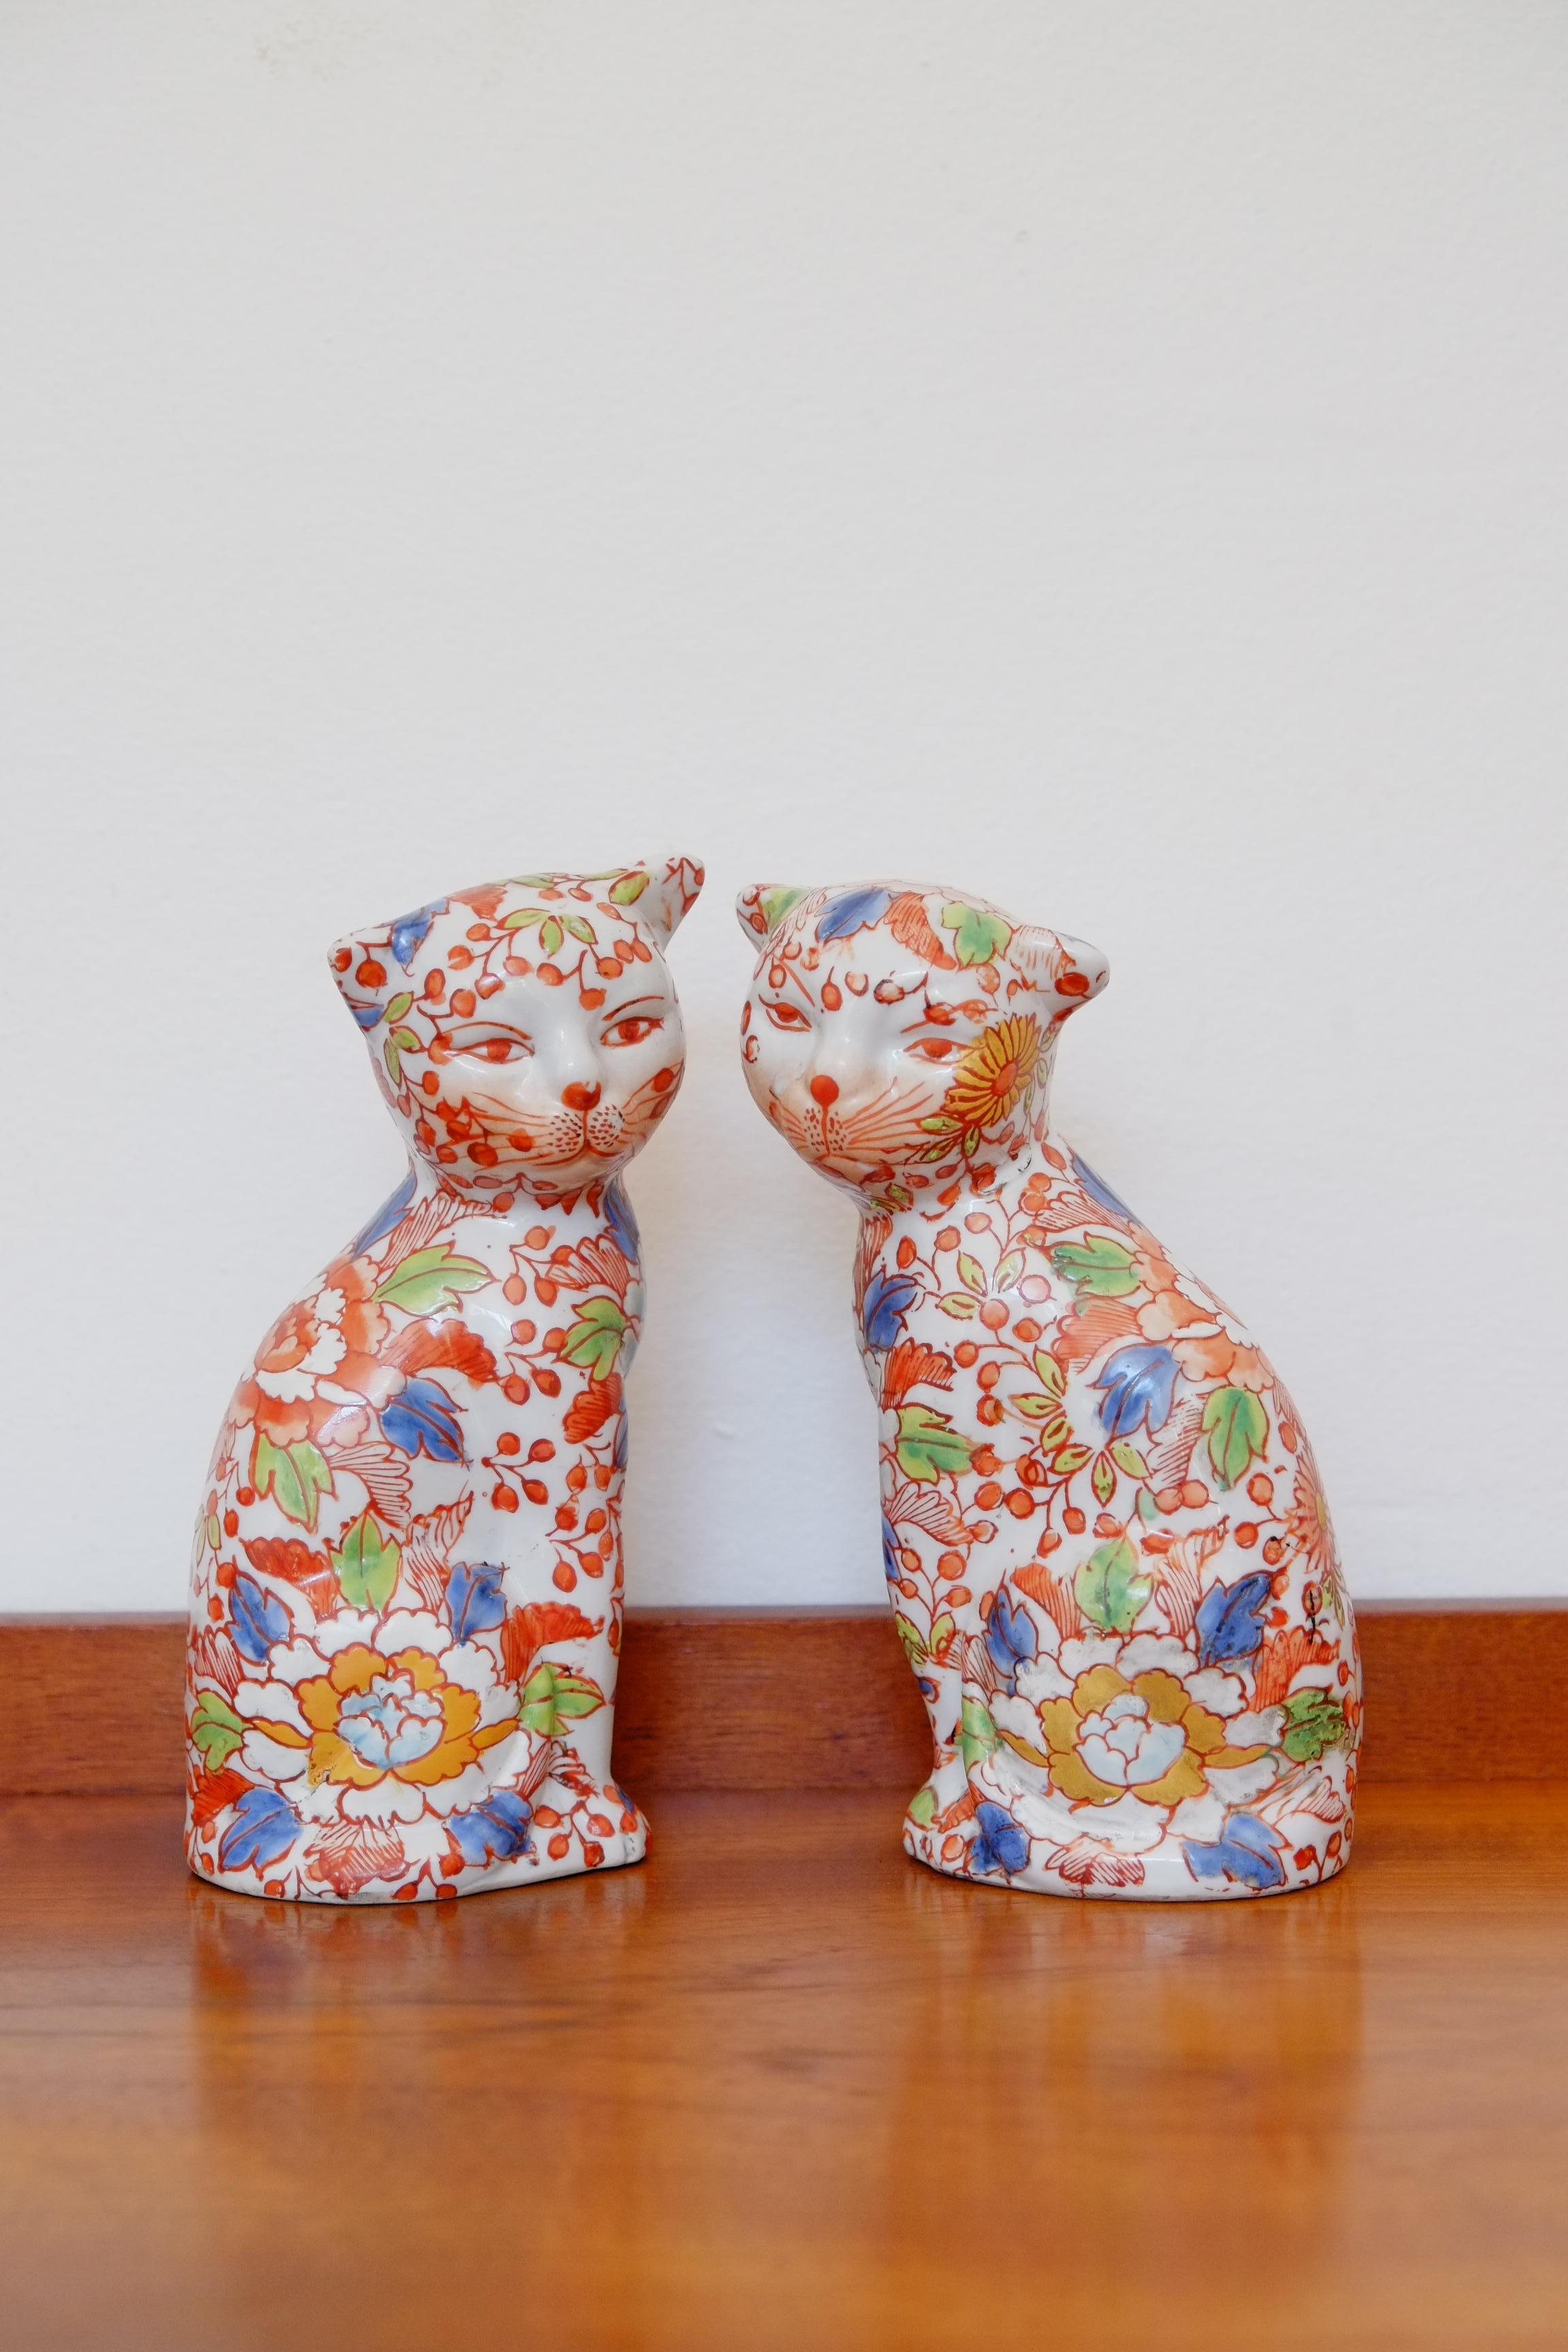 Une belle paire de chats en porcelaine Imari. Originaire du Japon et datant des années 1920. 

Cette paire de chats a un caractère adorable, avec de légères différences dues à la finition de l'émail imprimé à la main. Ils ont des tailles légèrement